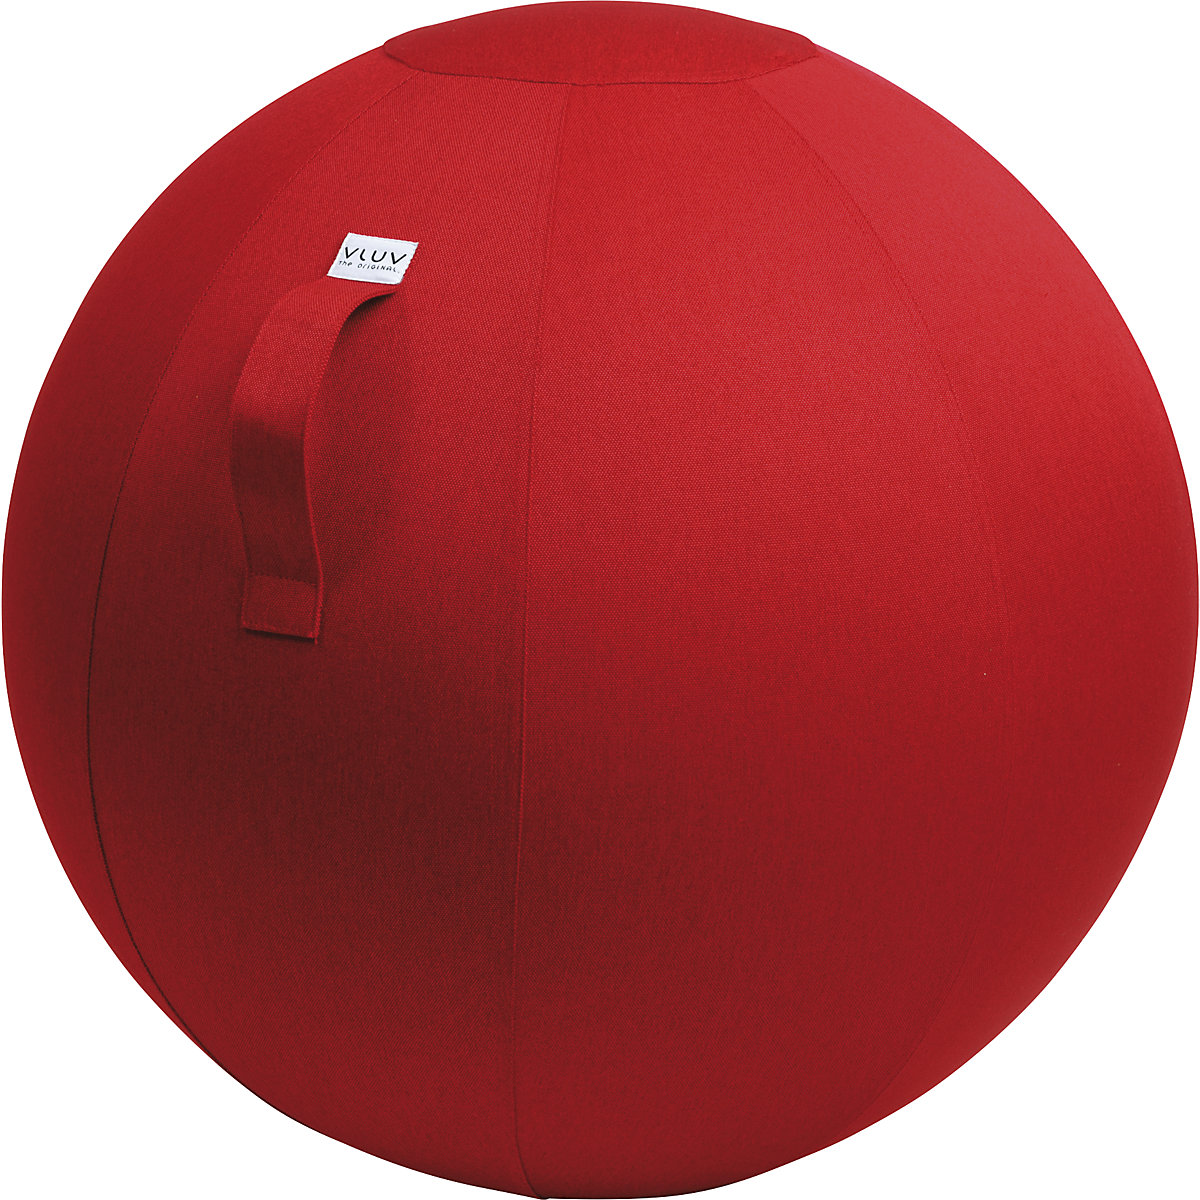 Piłka do siedzenia LEIV – VLUV, pokrowiec z tkaniny o wyglądzie płótna, 700 – 750 mm, rubinowo-czerwona-6